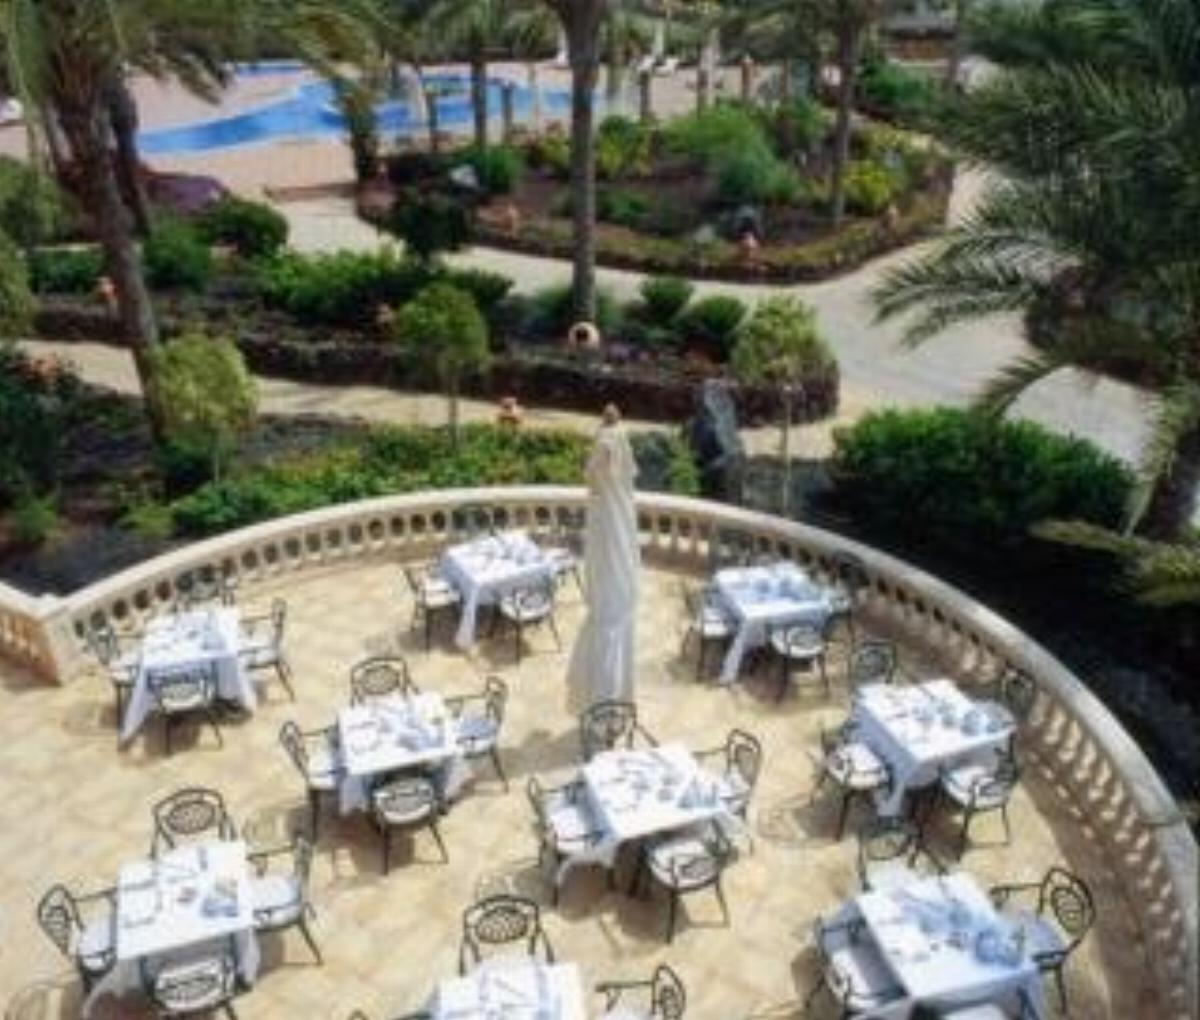 Elba Palace Golf Hotel Fuerteventura Spain